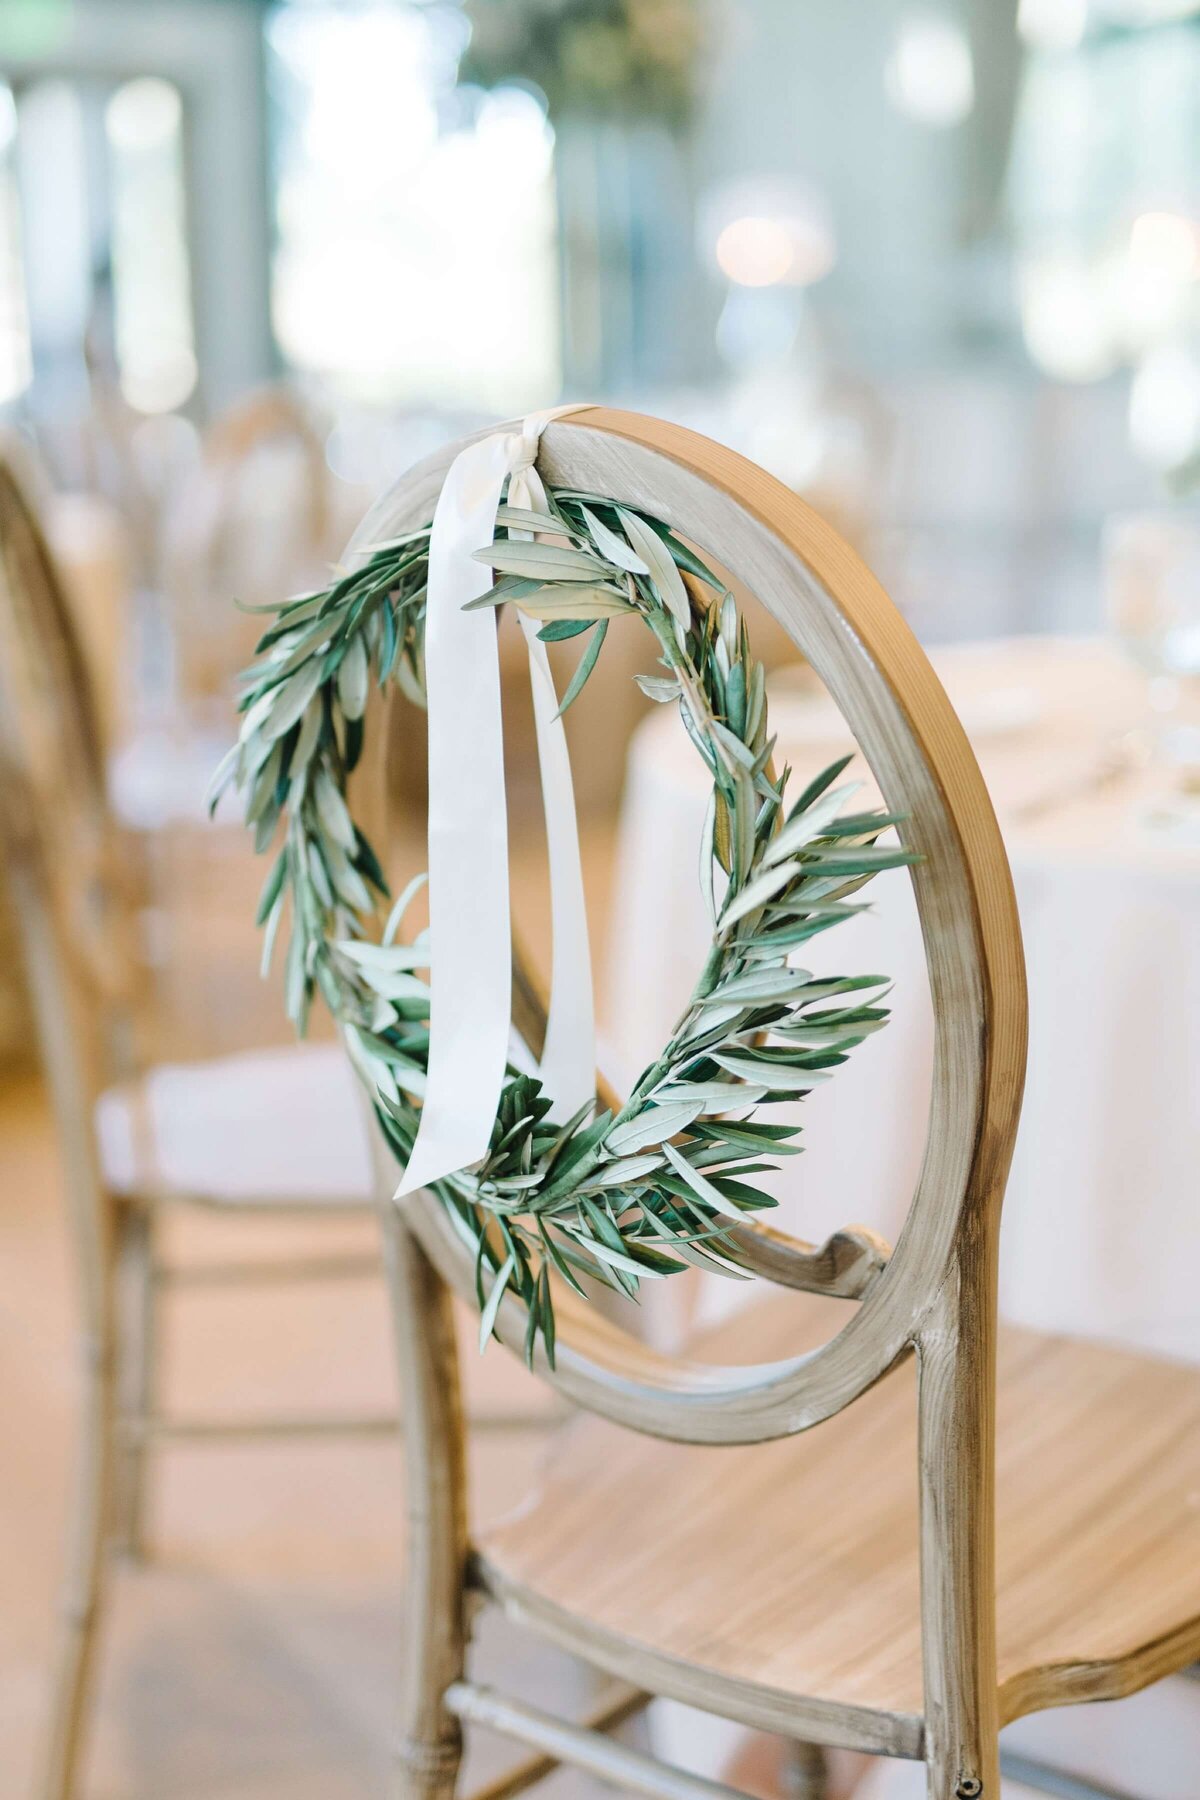 green wreath on wedding reception chair